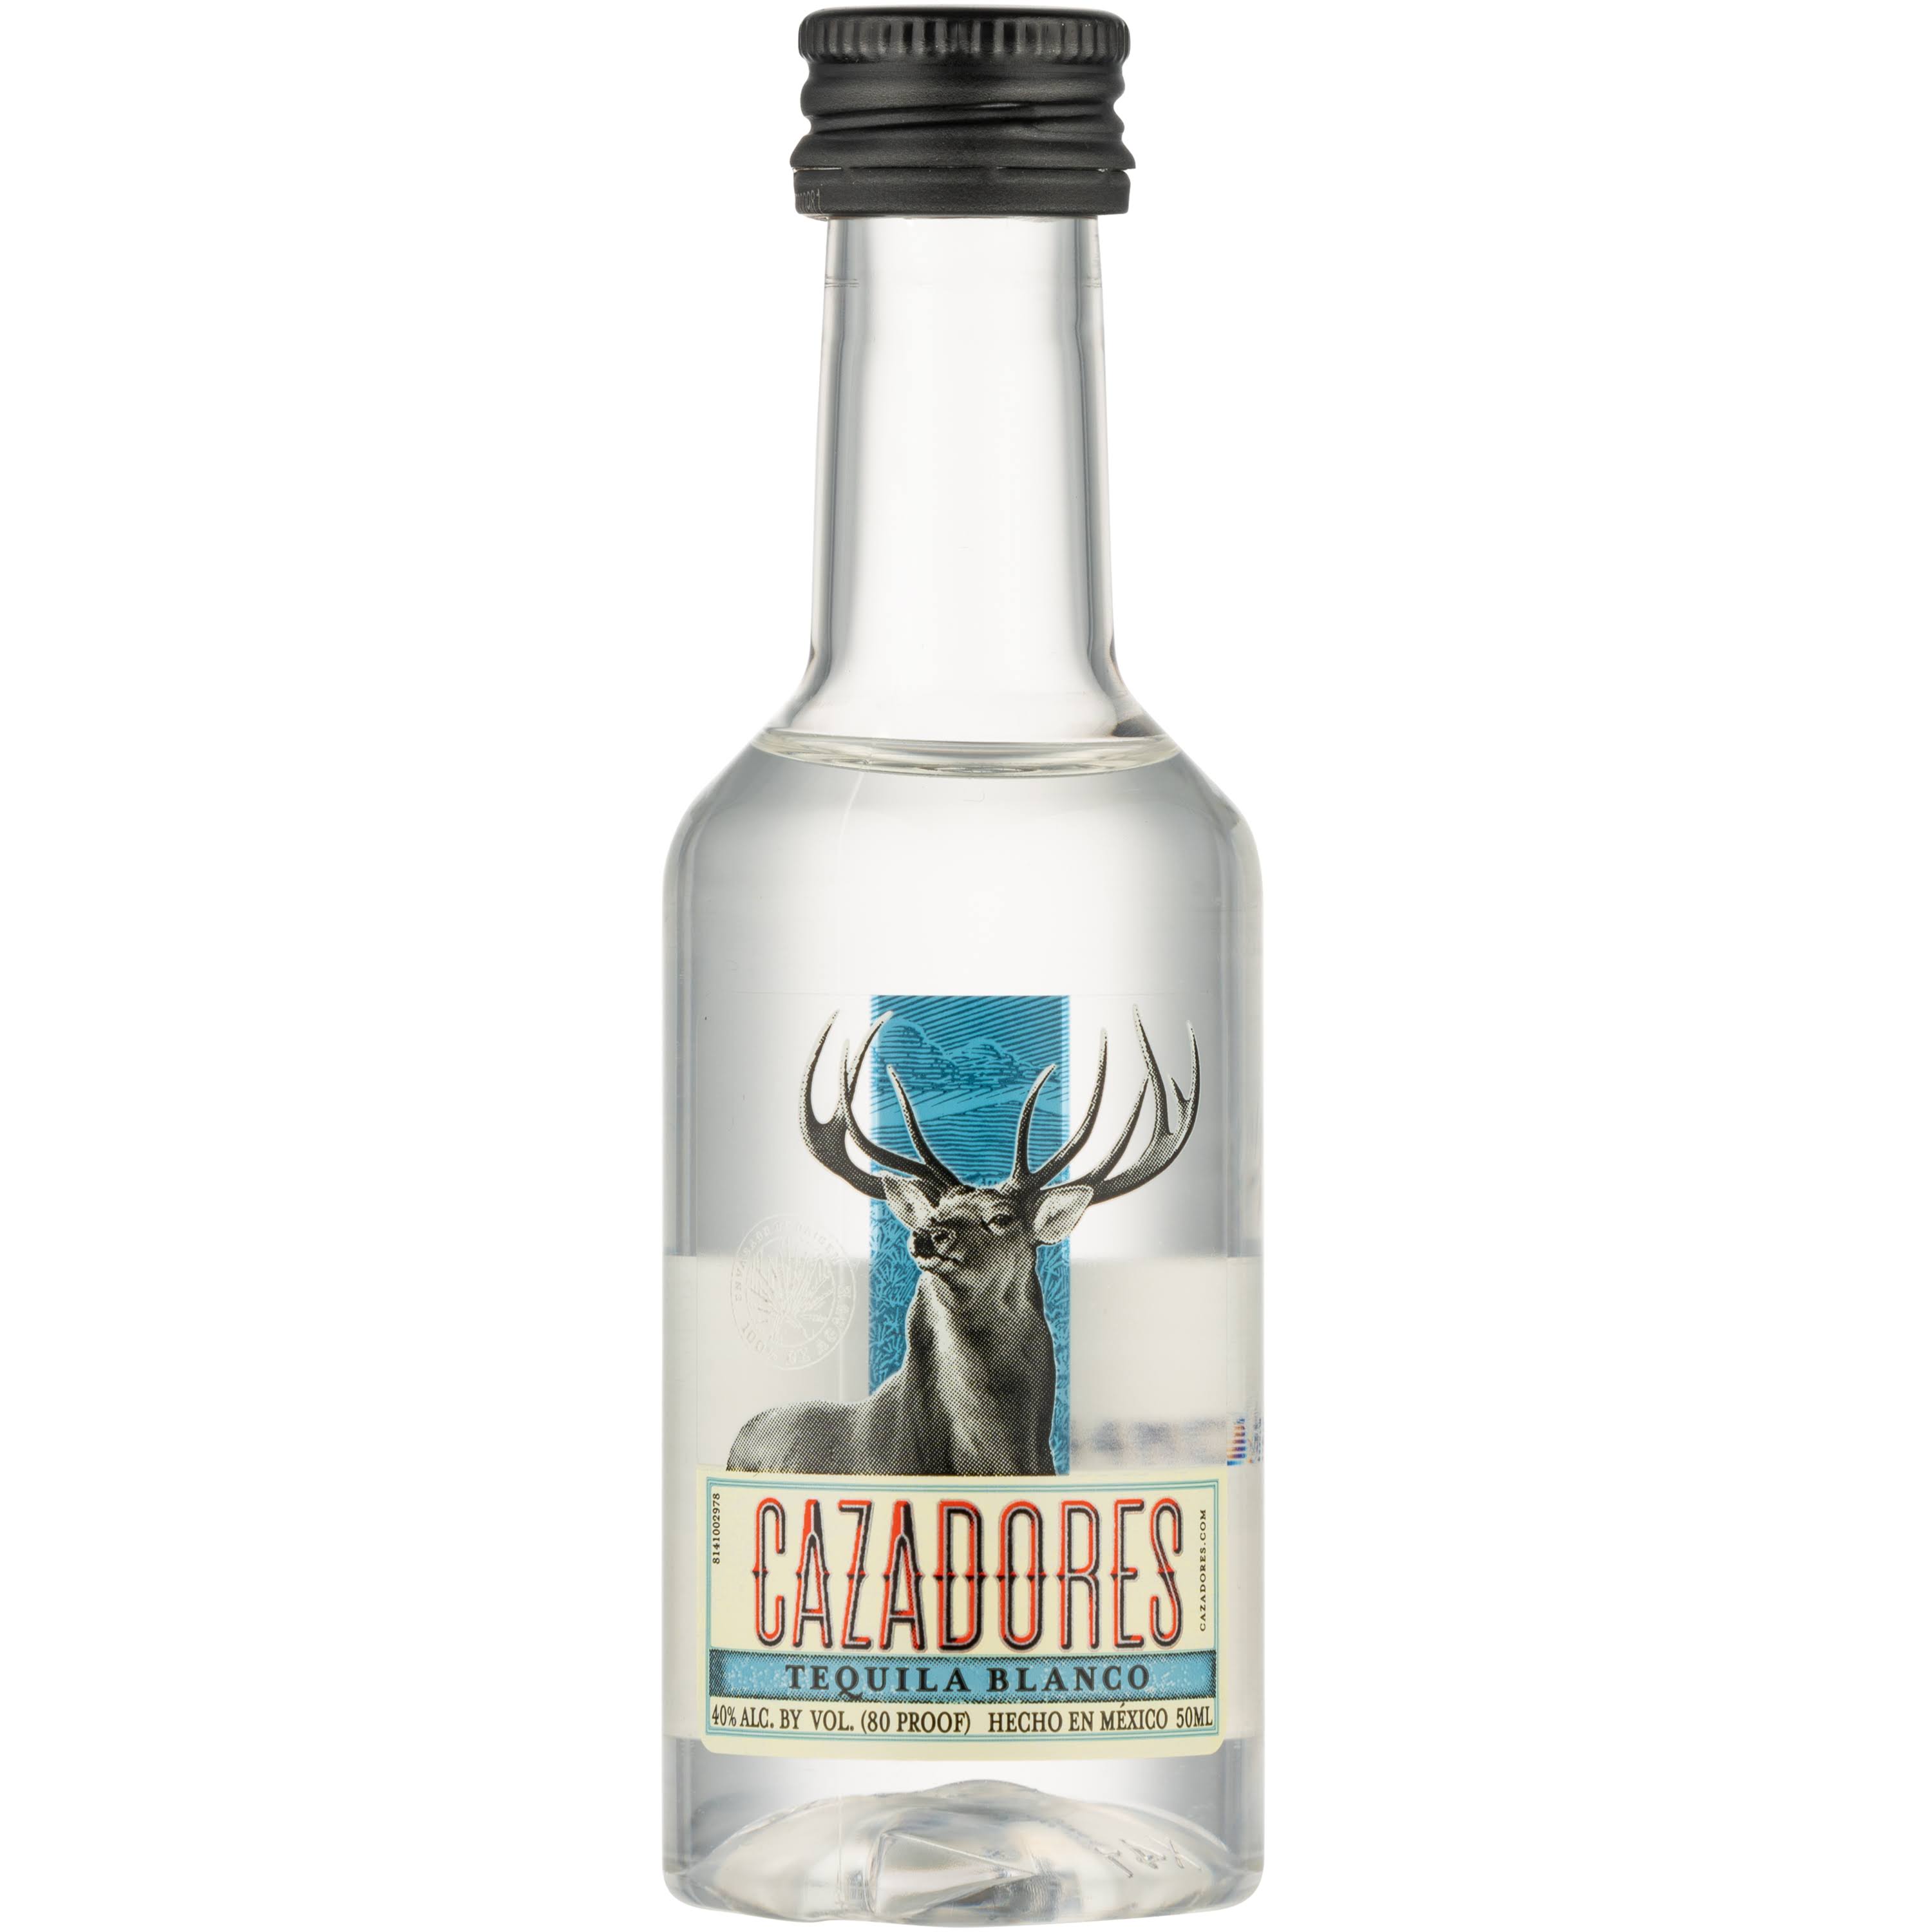 Cazadores Tequila, Blanco - 50 ml